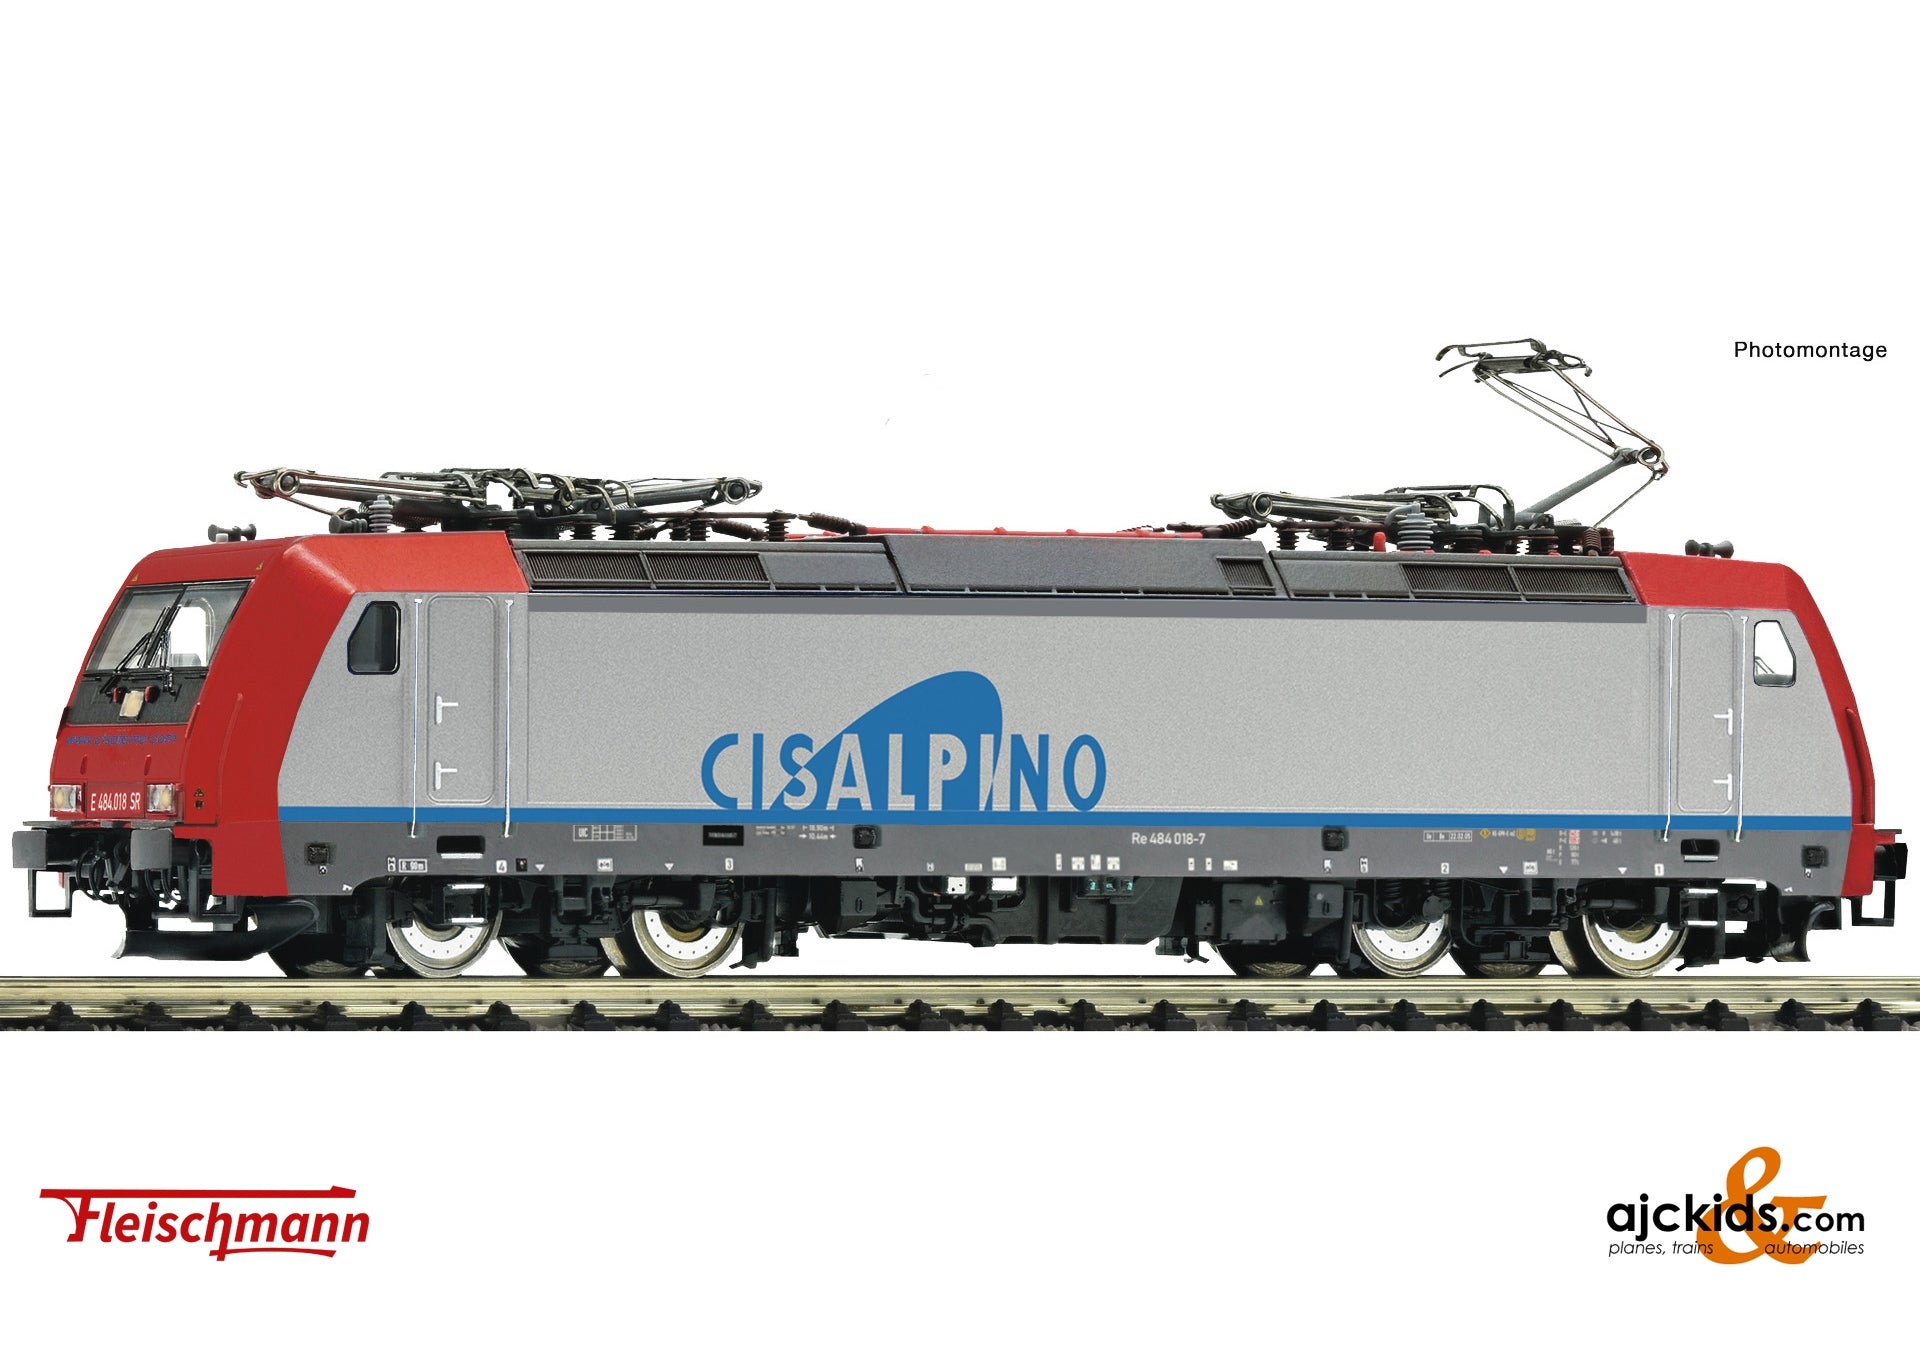 Fleischmann 7560017 - Electric Locomotive Re 48 4 018-7, Cisalpino, EAN: 4005575260534